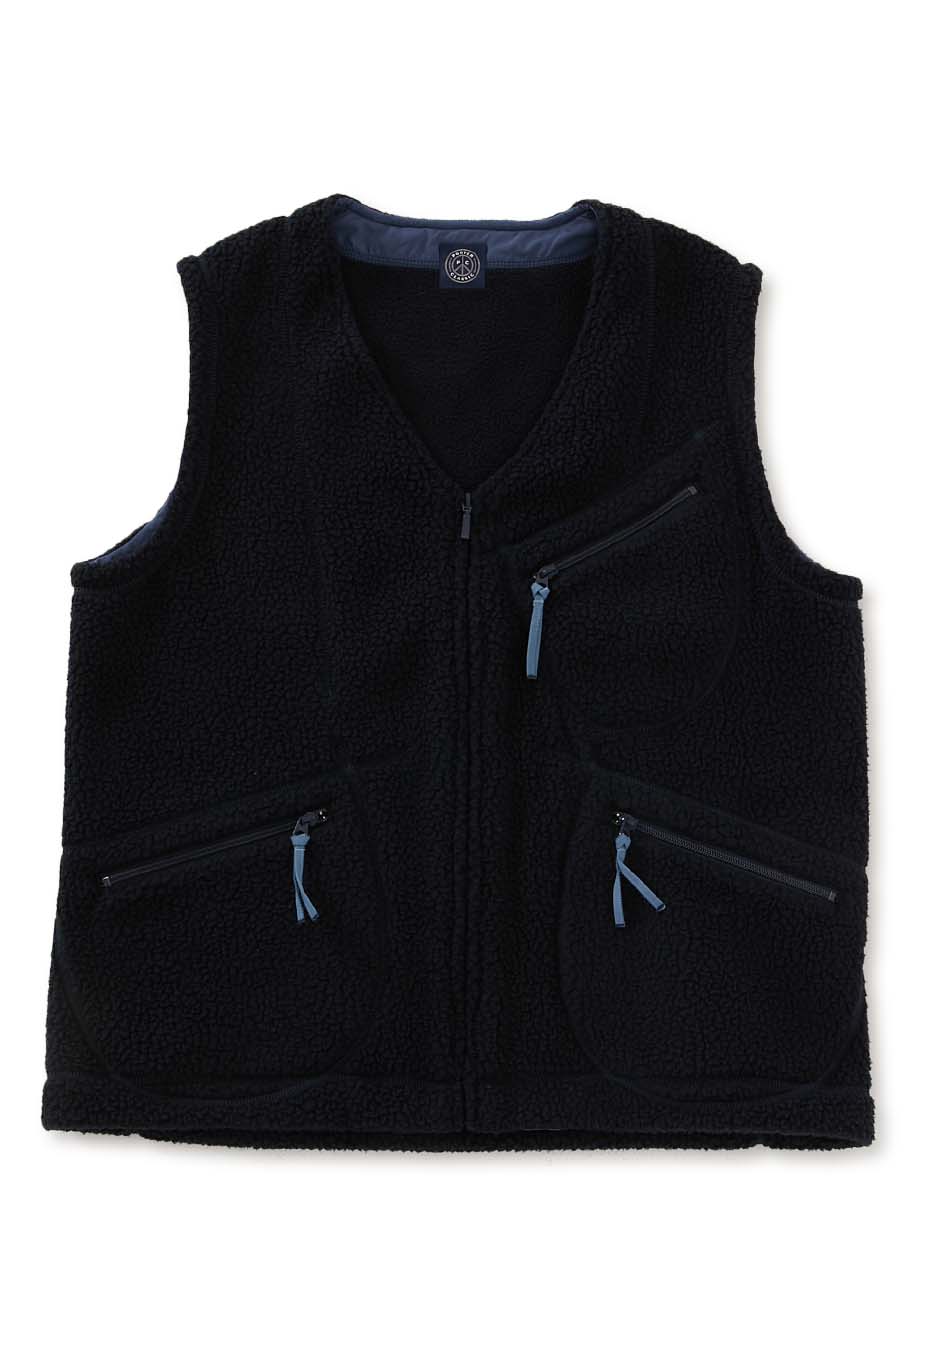 PORTER CLASSIC fleece zip vest